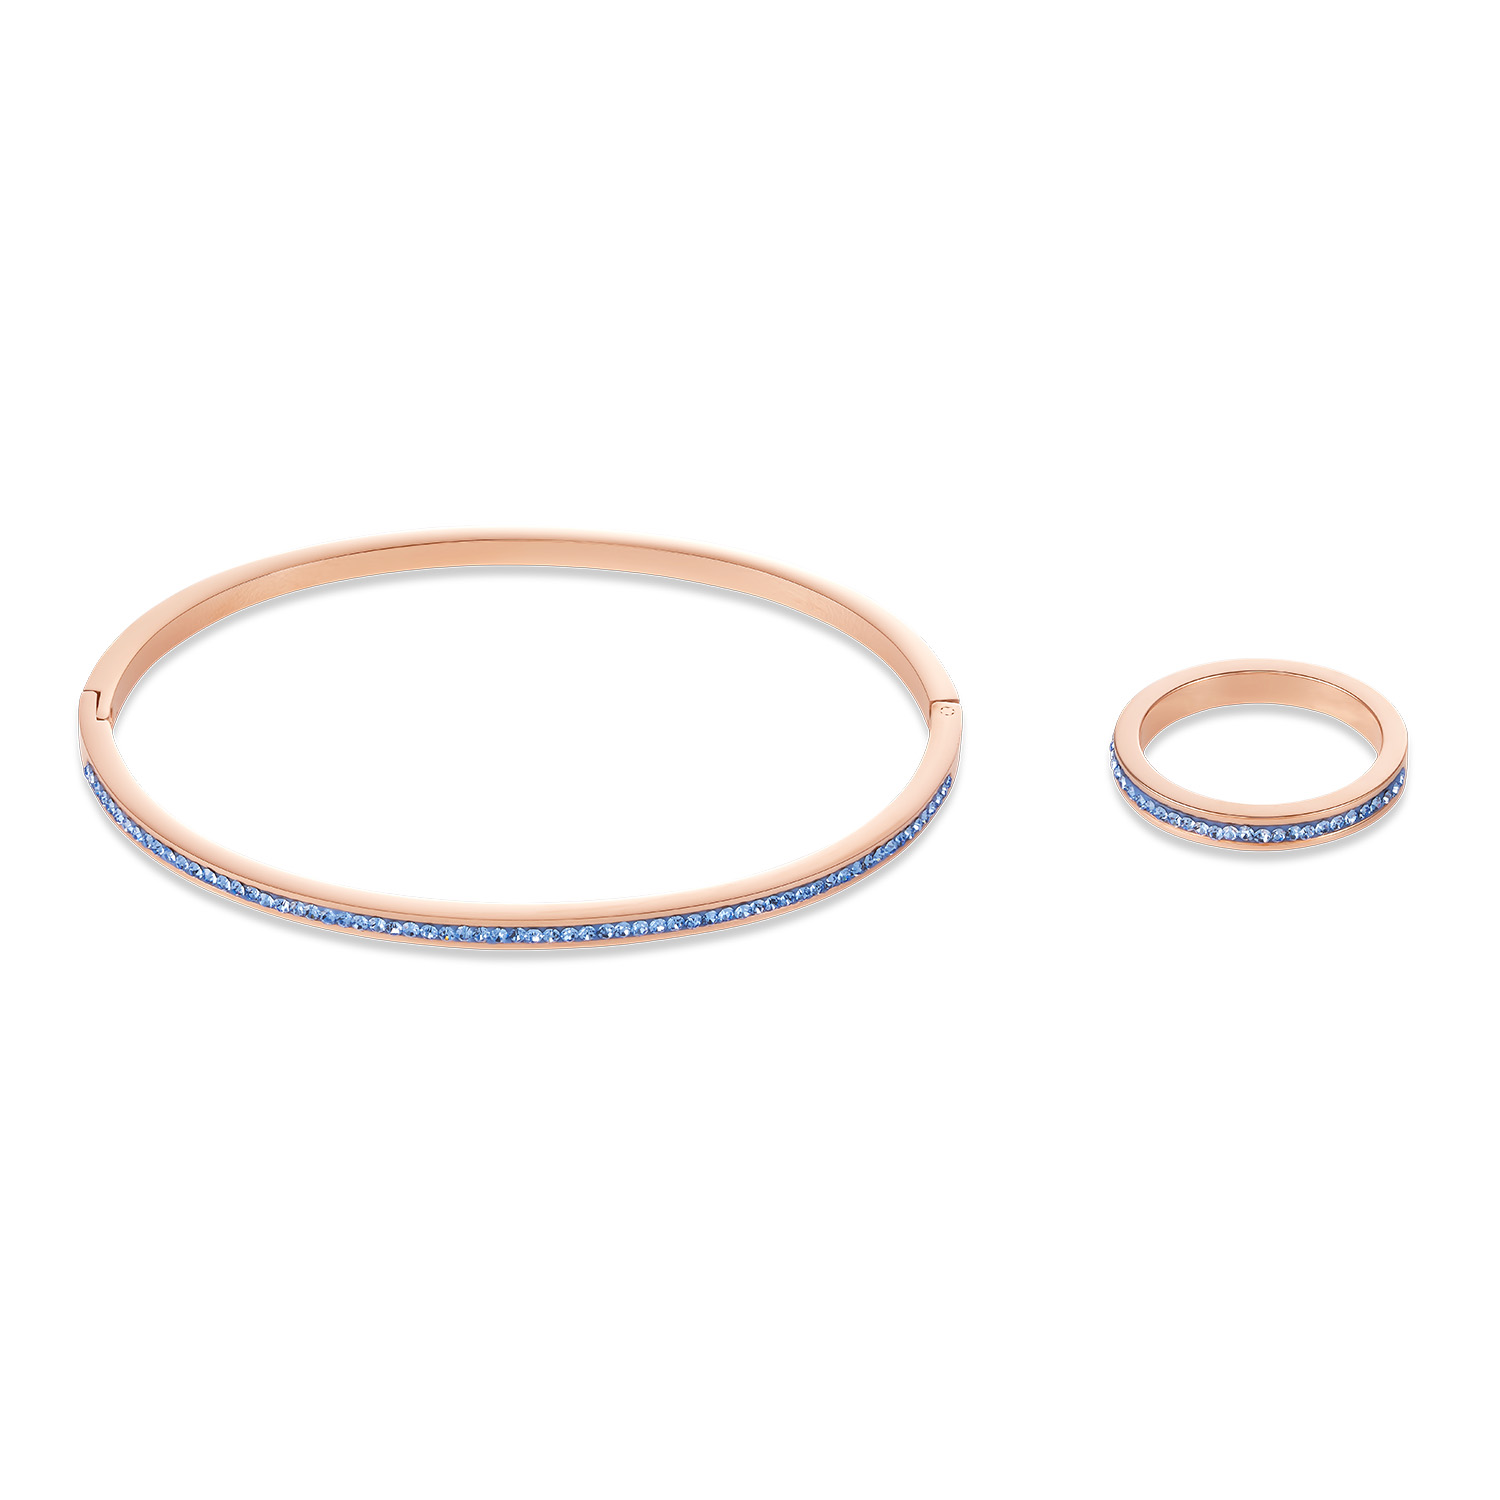 Produttore all'ingrosso OEM / ODM di gioielli in oro rosa riempito con bracciale in argento con zirconi cubici, produttore all'ingrosso personalizzato